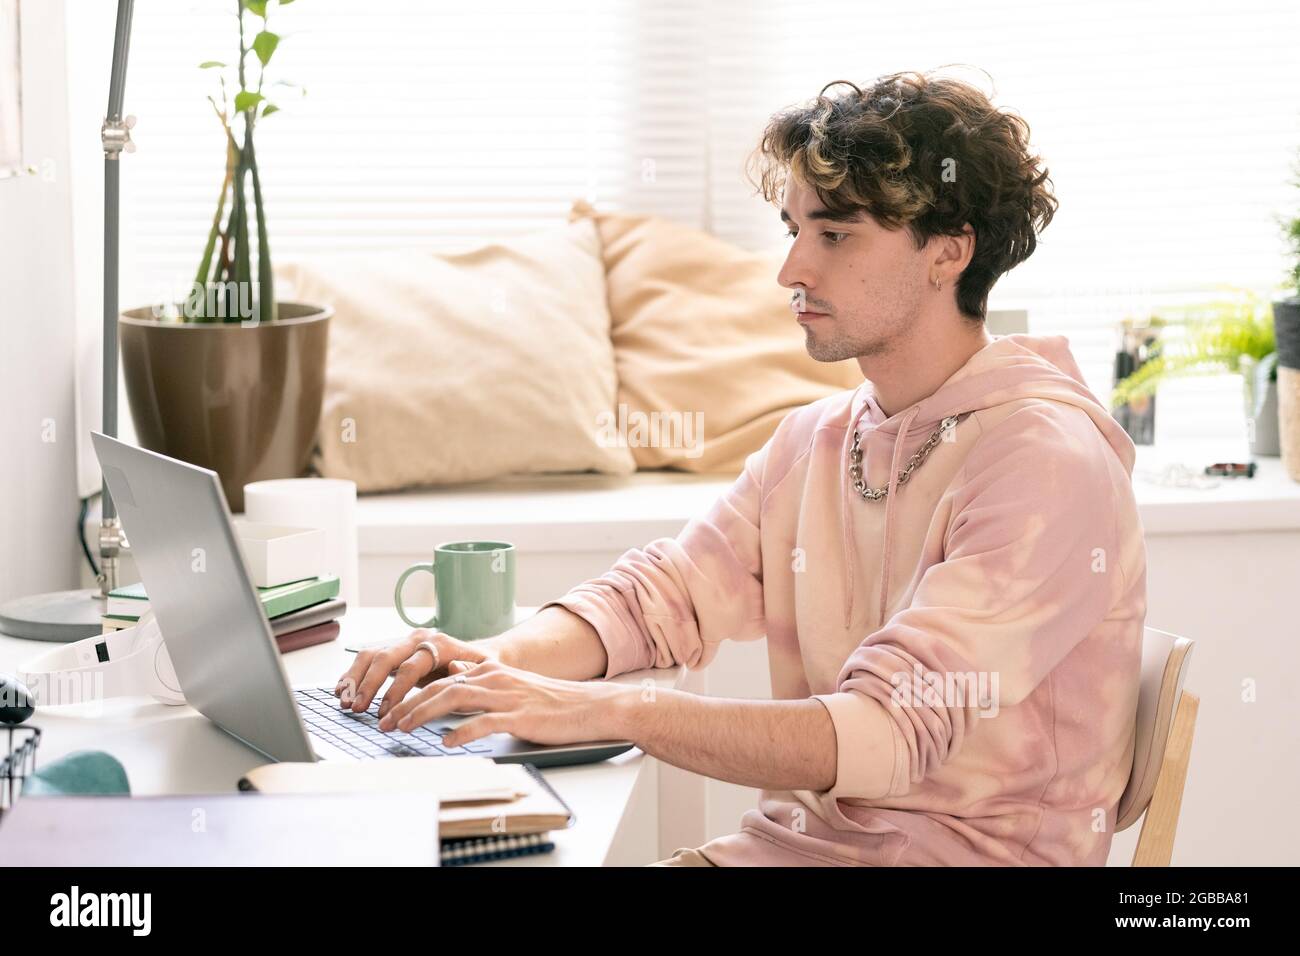 Ein ernsthafter Teenager, der sich ein Notebook-Display ansieht, während er in der häuslichen Umgebung vernetzt ist Stockfoto